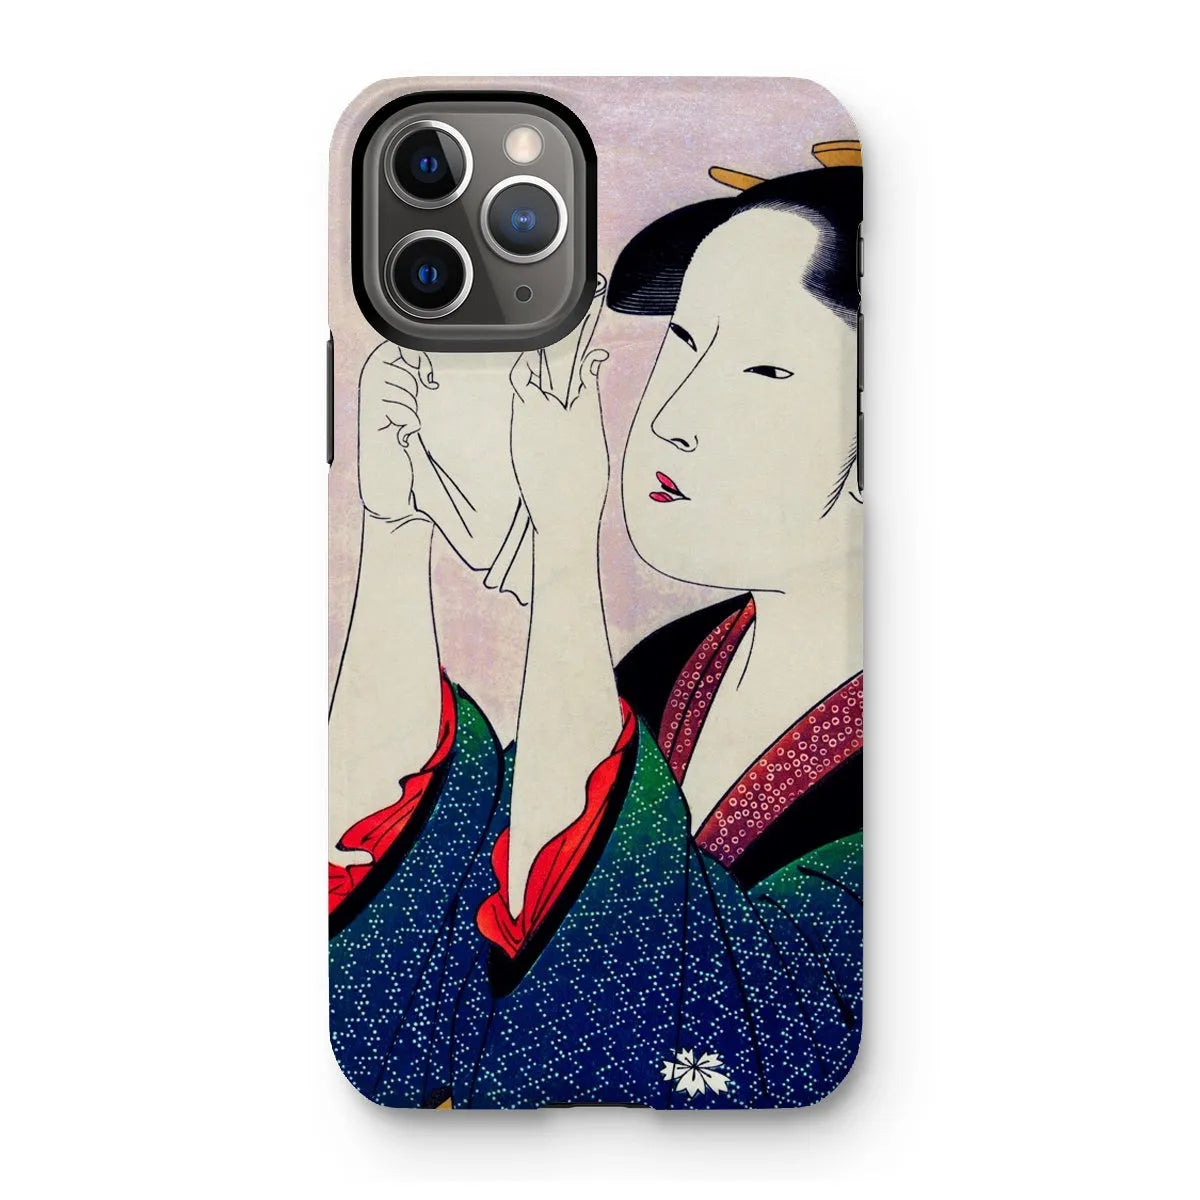 Fumiyomu Onna - Japanese Ukiyo-e Phone Case - Utamaro - Iphone 11 Pro / Matte - Mobile Phone Cases - Aesthetic Art